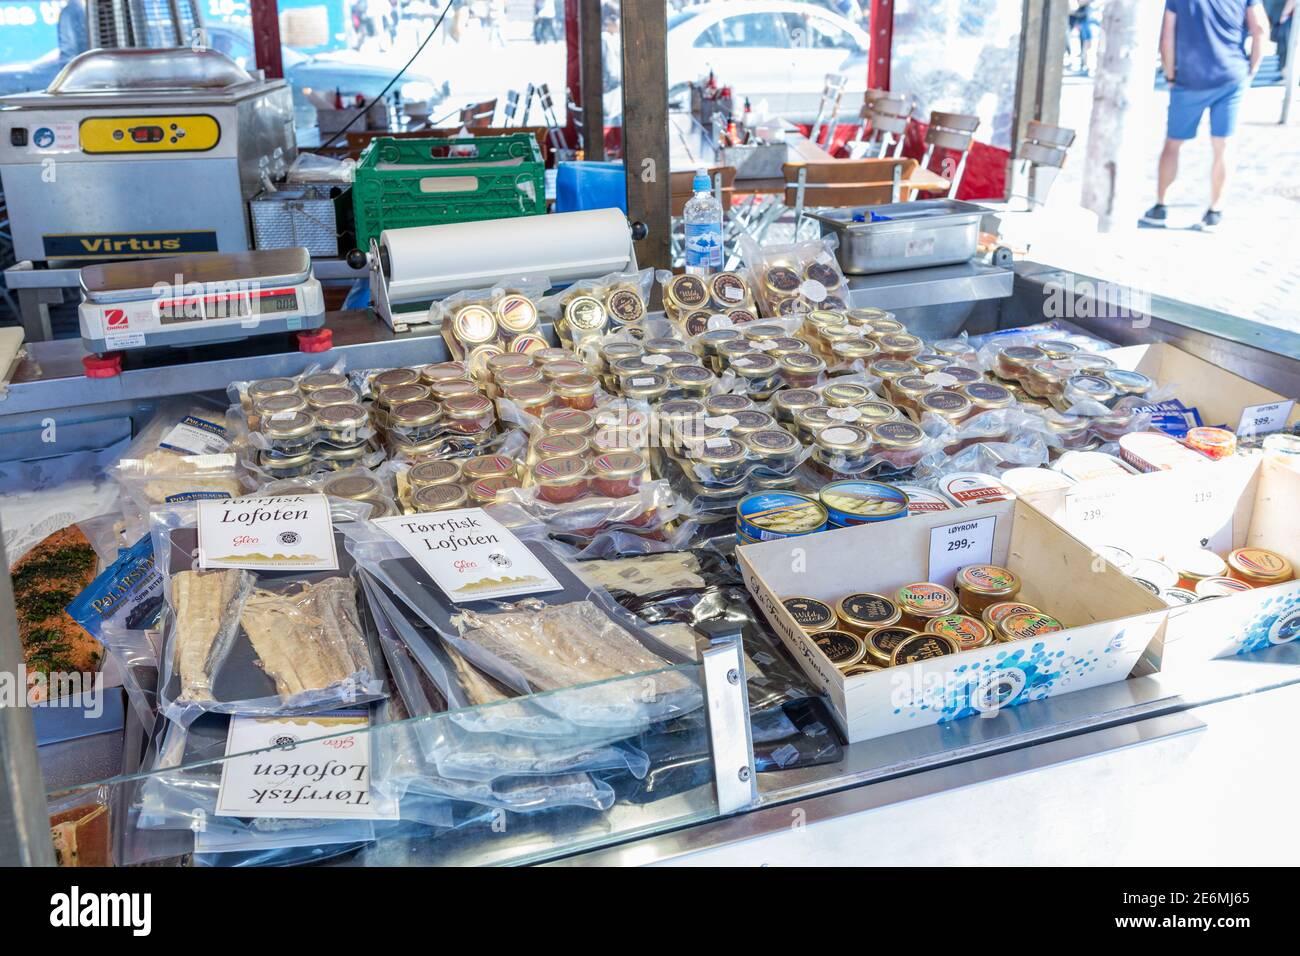 Variety of norwegian specialties at the market in Bergen, Norway Stock Photo